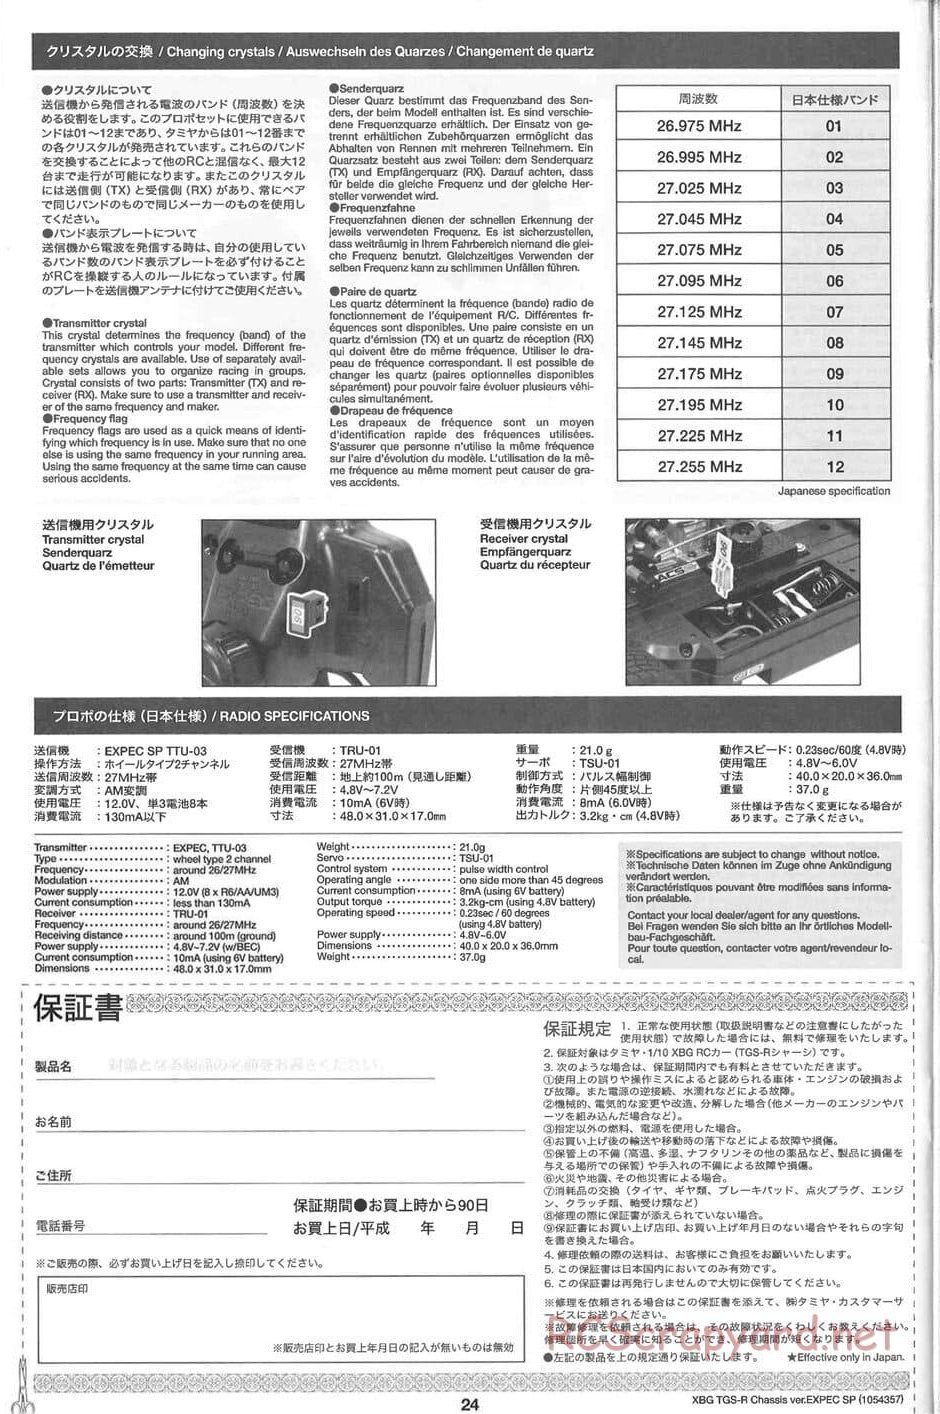 Tamiya - TGS-R Chassis - Manual - Page 24